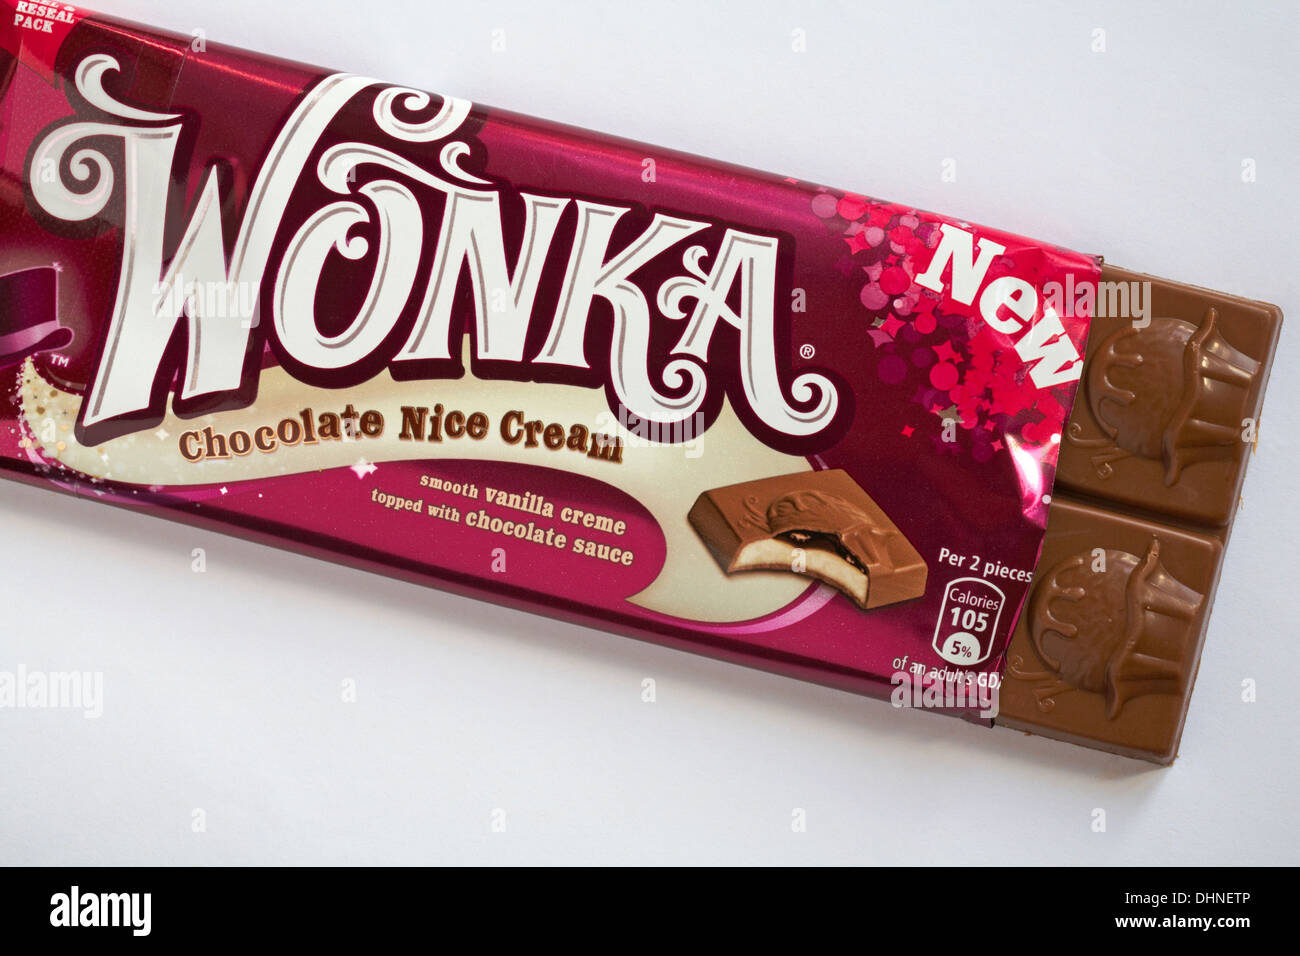 Nuovo Wonka Chocolate bel crema cioccolato aromatizzato bar aperto per  mostrare il contenuto è stato impostato su sfondo bianco Foto stock - Alamy